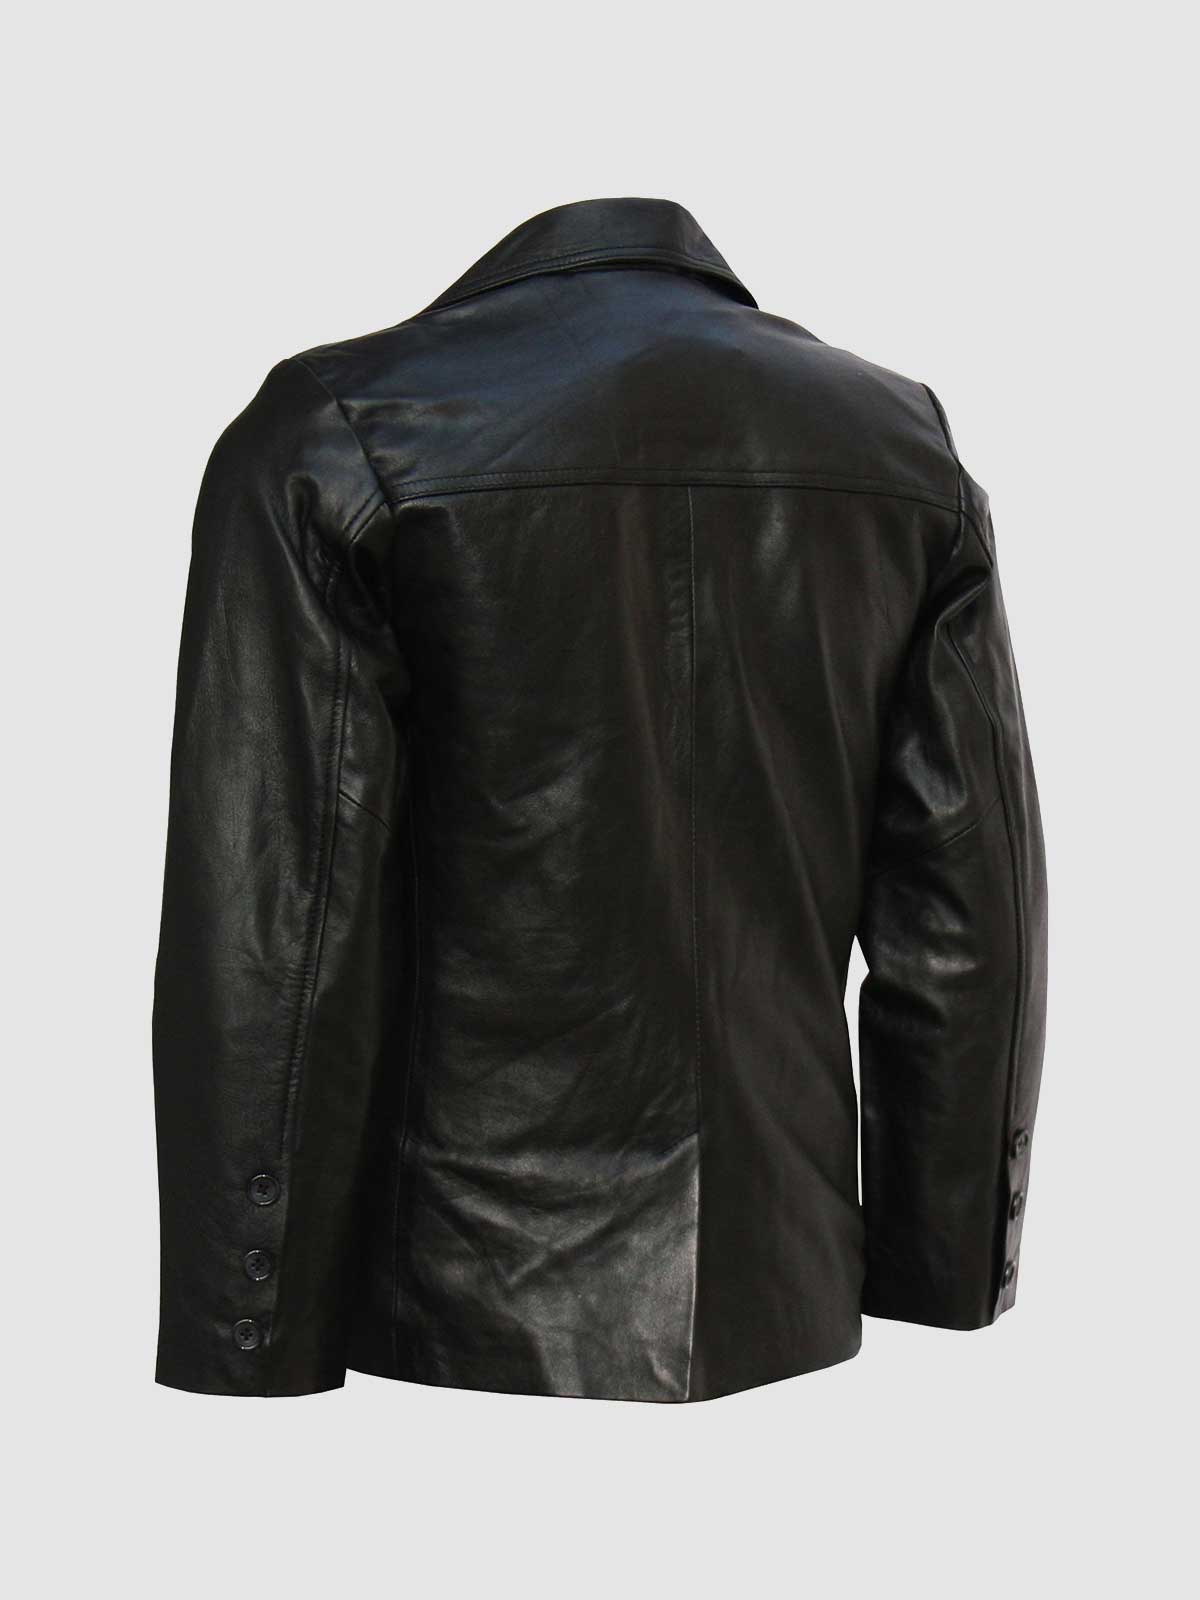 Men's Black Leather Coat | Leather Jacket Master